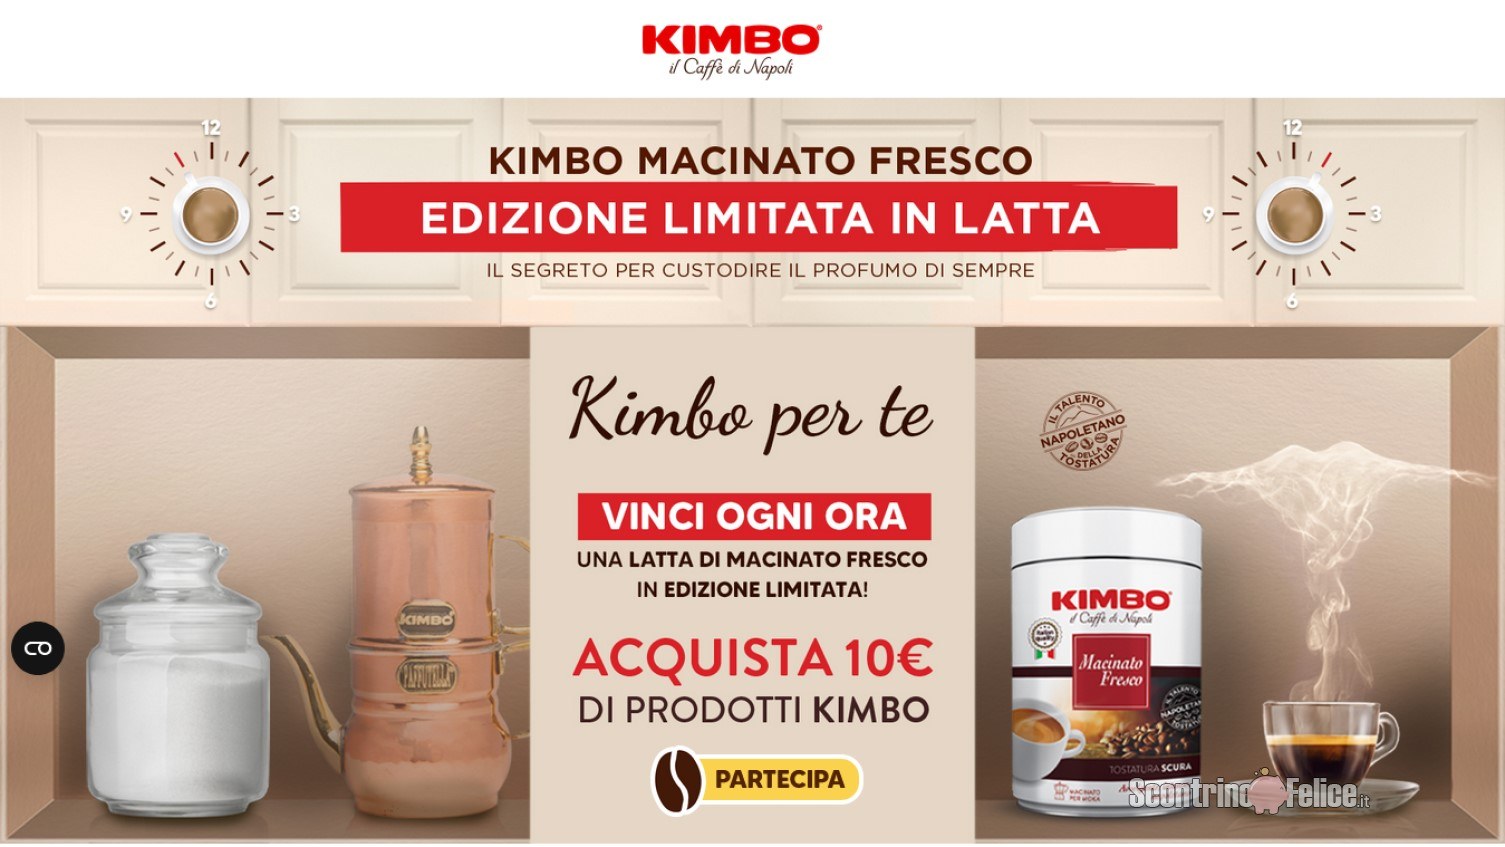 Concorso Kimbo “Macinato wave 1”: vinci 1 latta Macinato Fresco in edizione limitata ogni ora